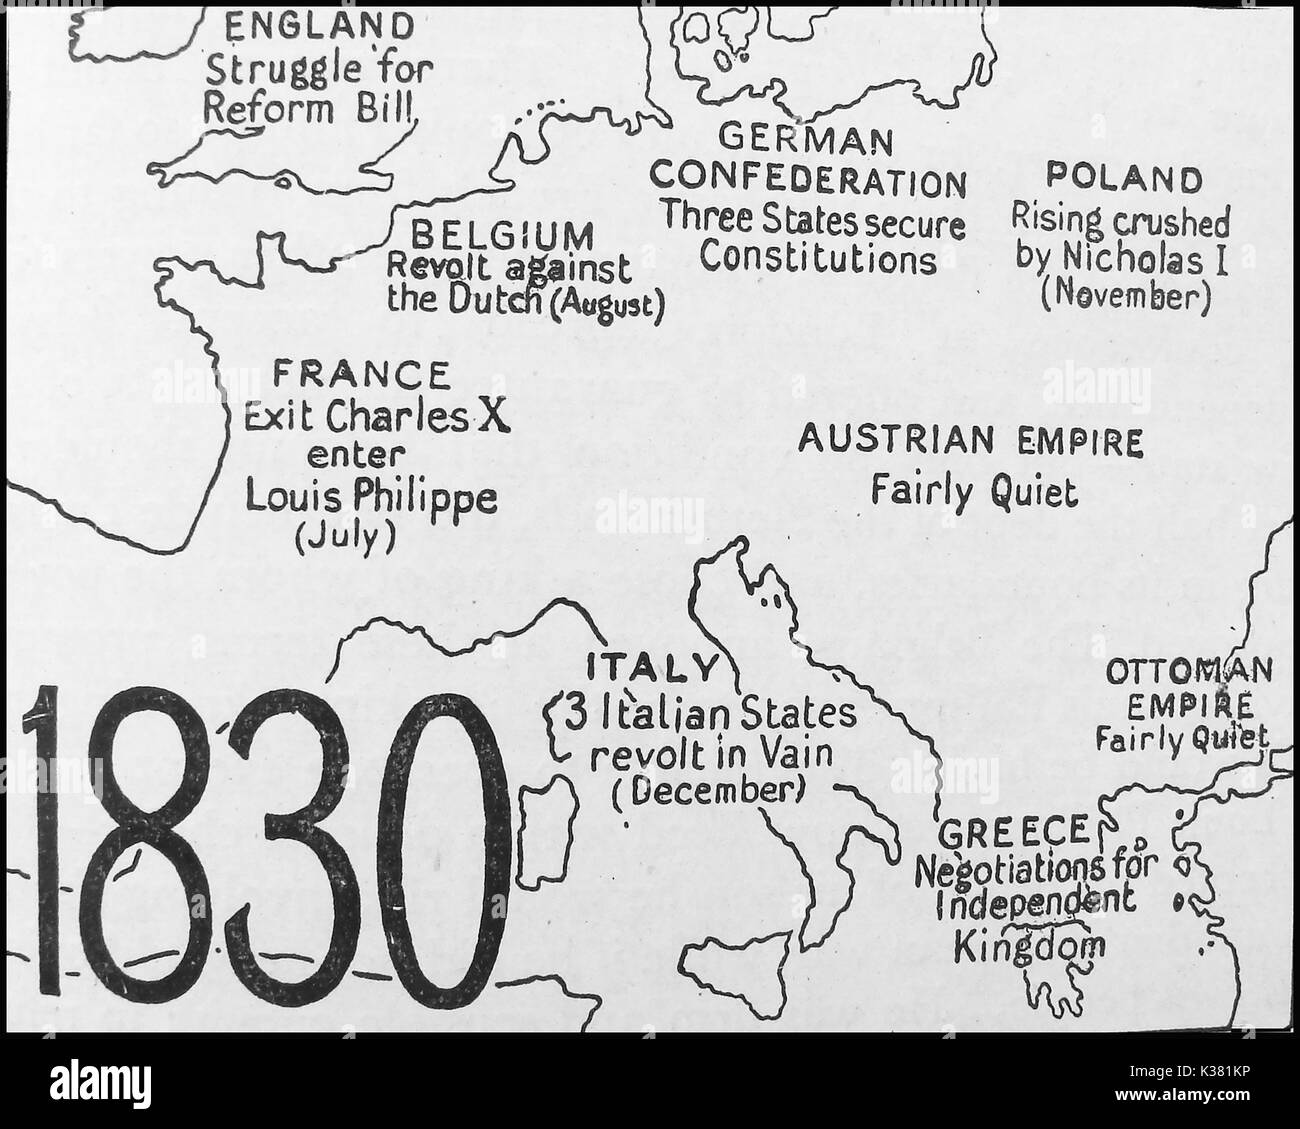 Cette carte politique montrant l'état de l'Europe en 1830 - Pays-Bas - Belgique - France - Confédération allemande - Pologne - Autriche - Italie - Grèce - Empire Ottoman Banque D'Images